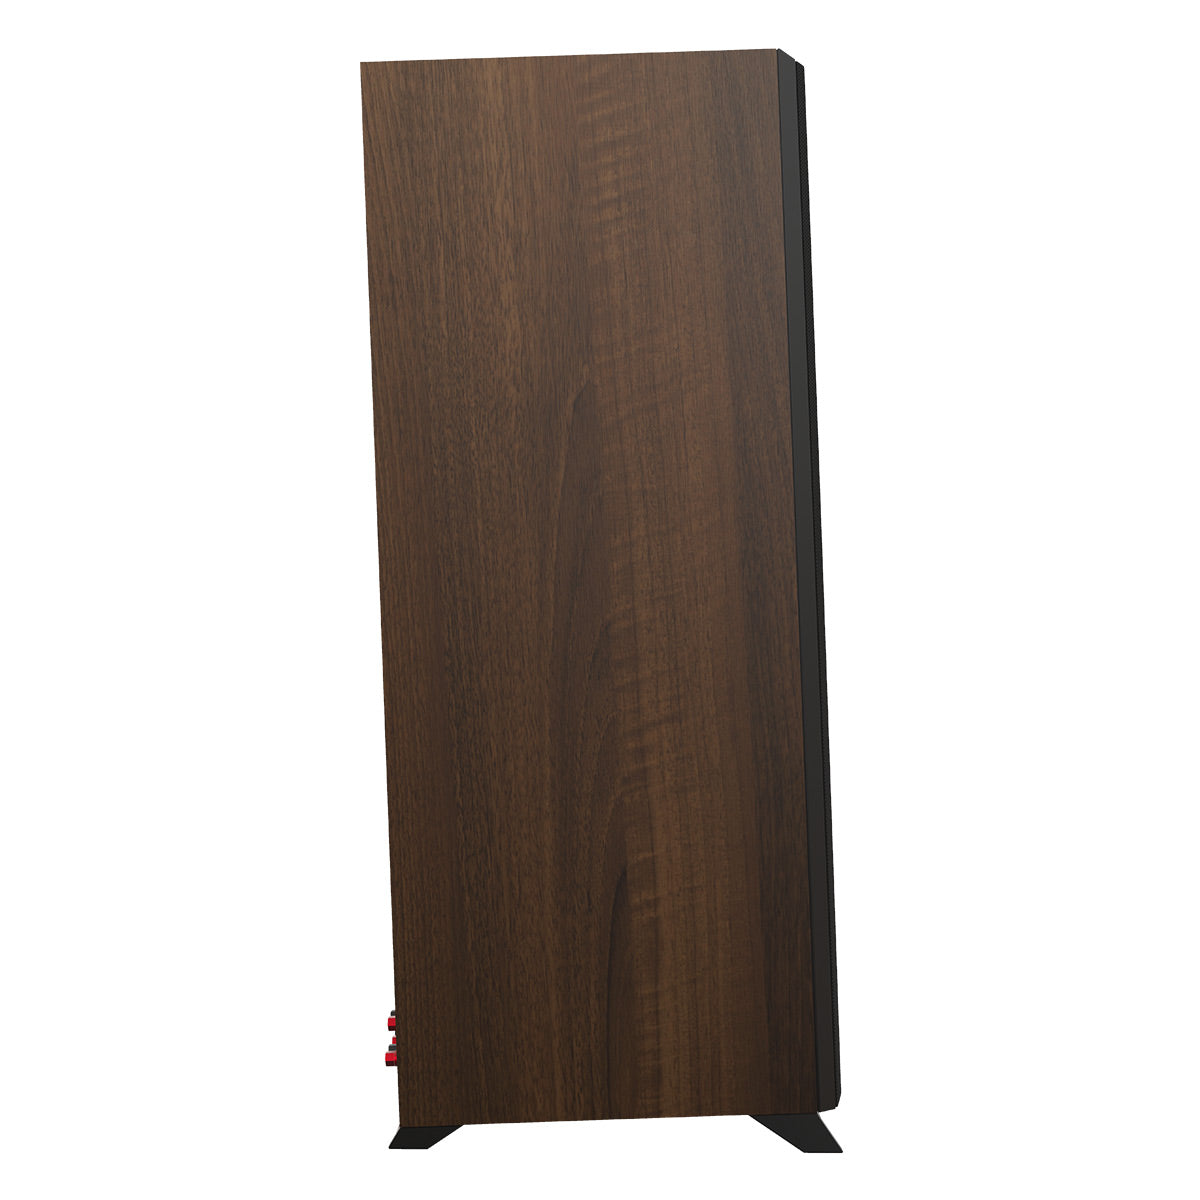 Klipsch RP-6000F II Reference Premiere Floorstanding Speaker - Each (Walnut)